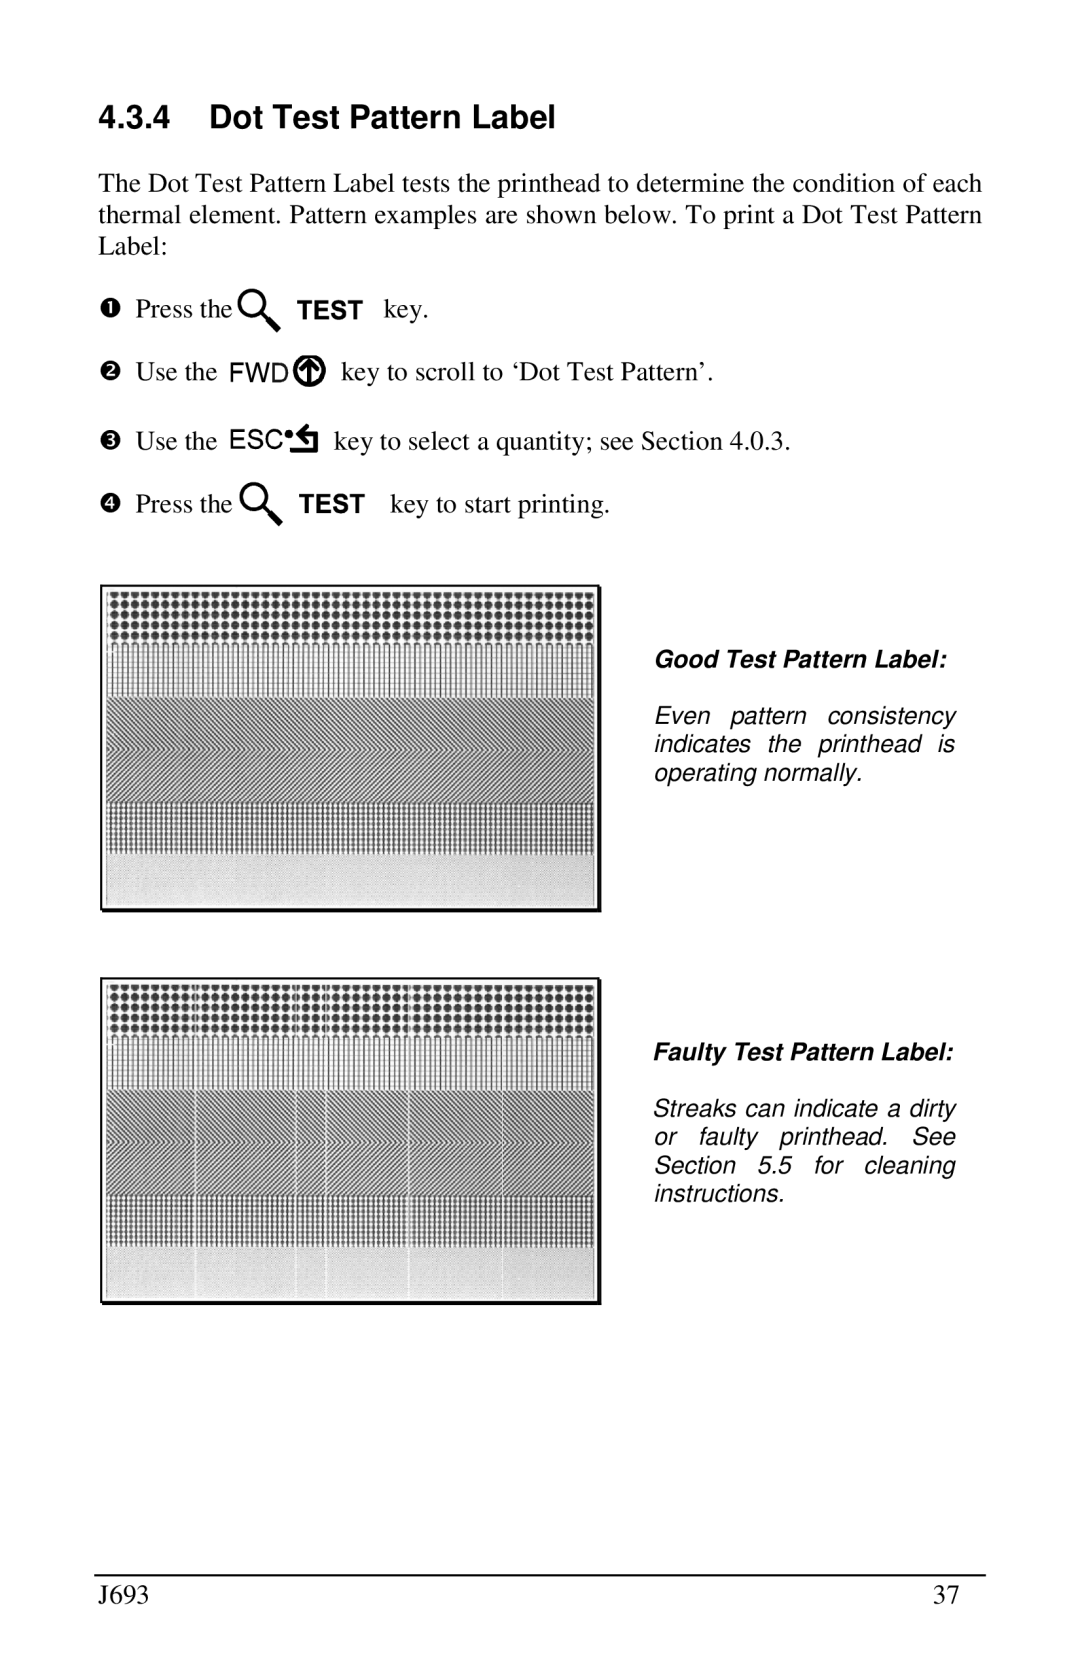 Pitney Bowes J693 manual Dot Test Pattern Label, Good Test Pattern Label, Faulty Test Pattern Label 